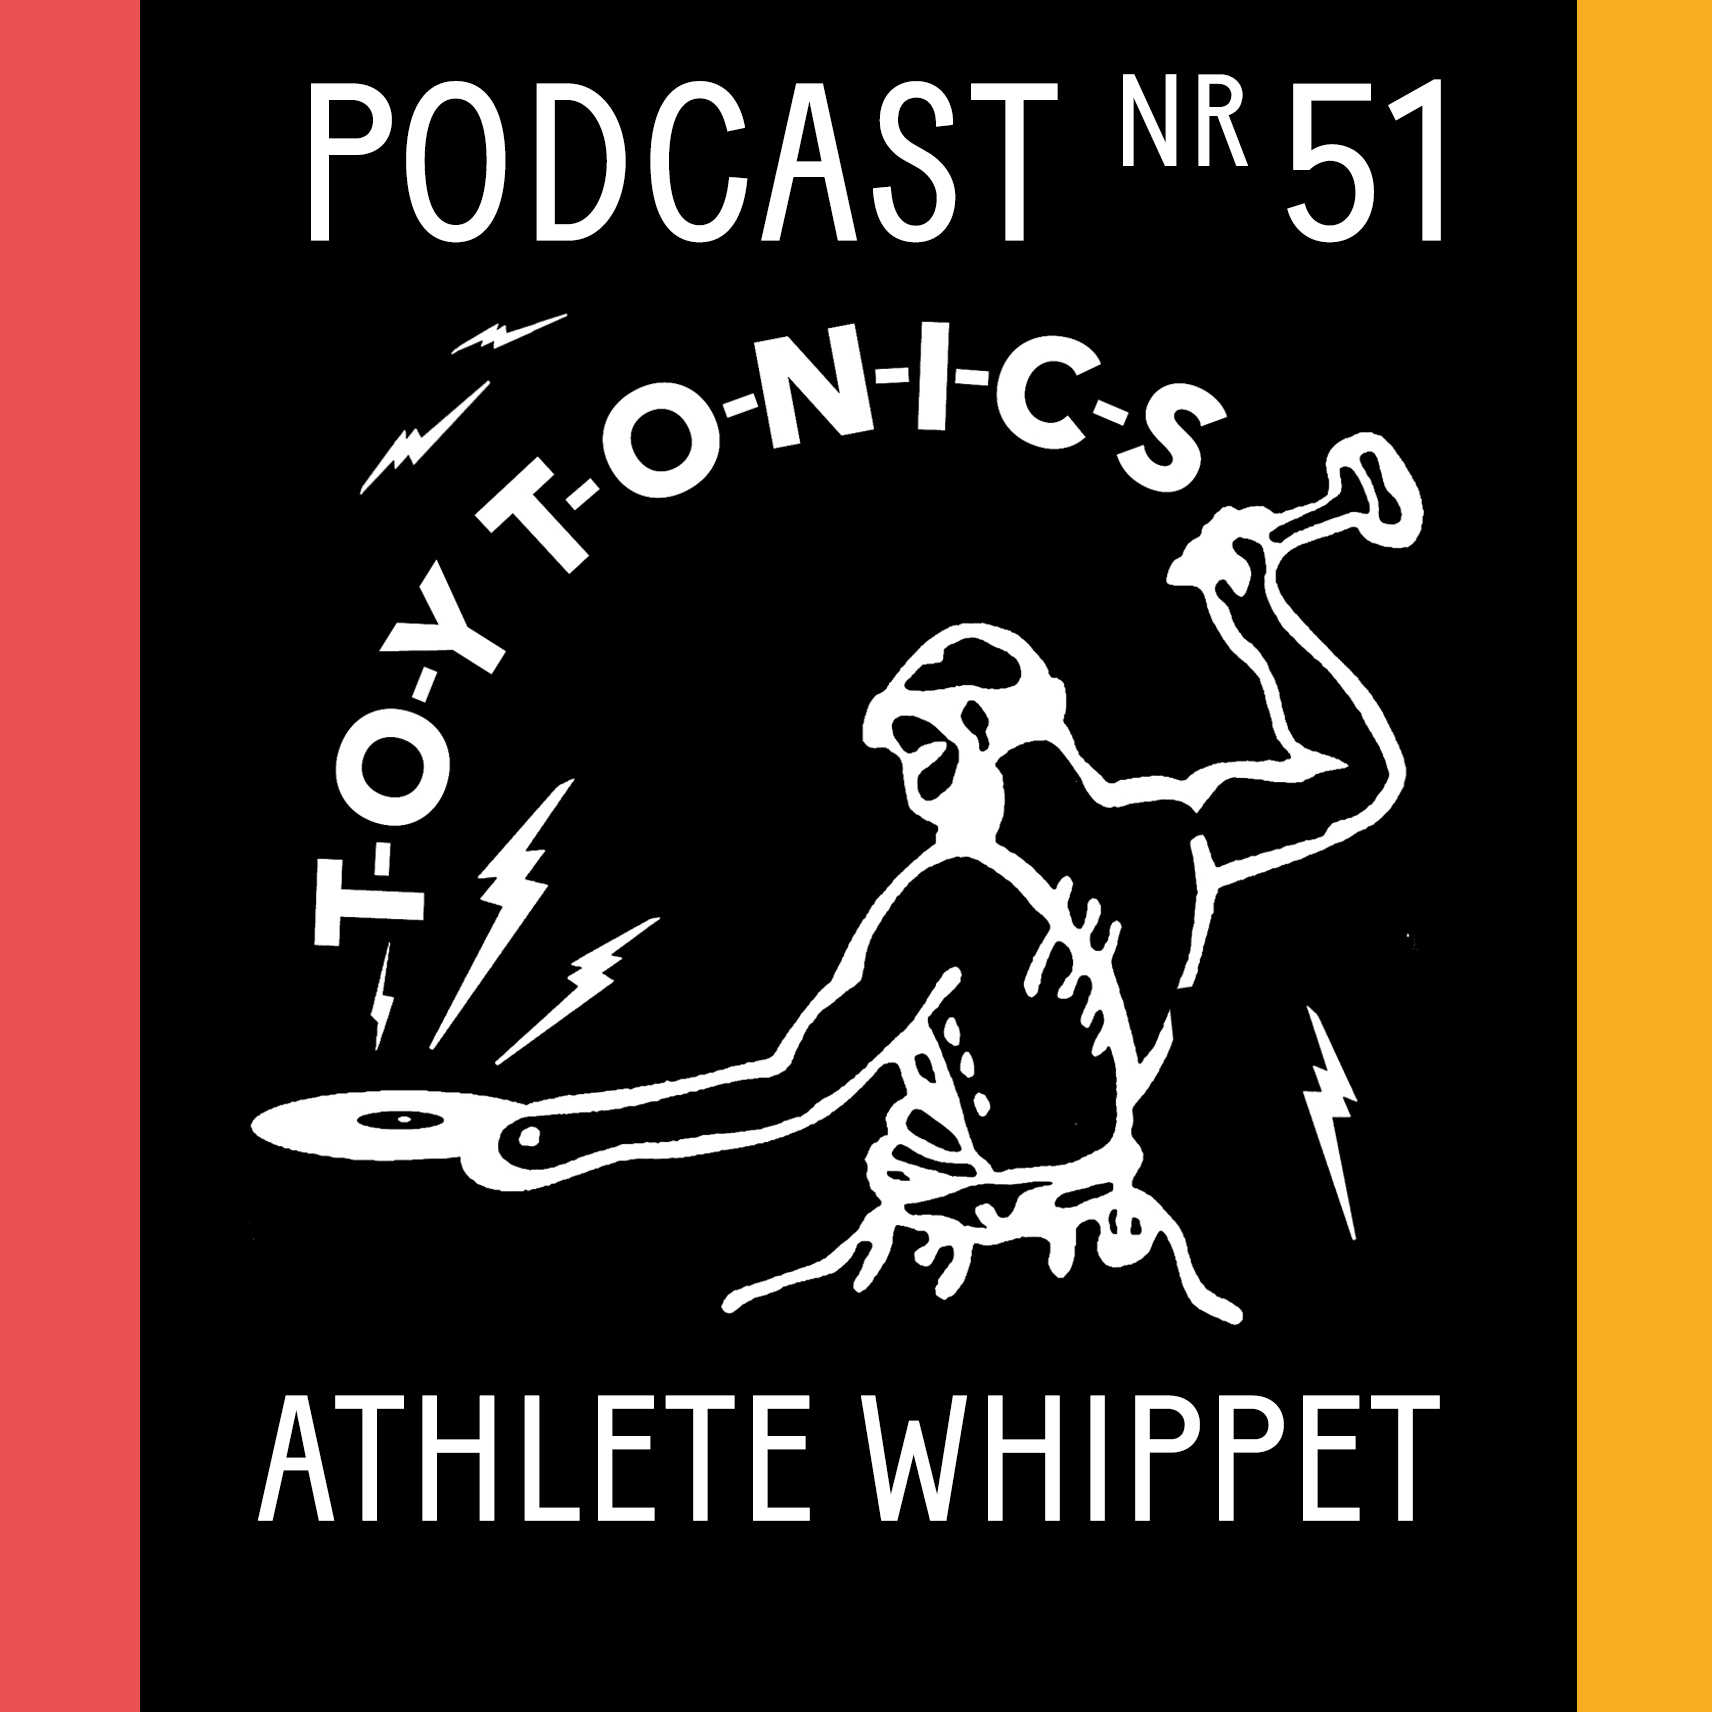 PODCAST NR 51 - Athlete Whippet